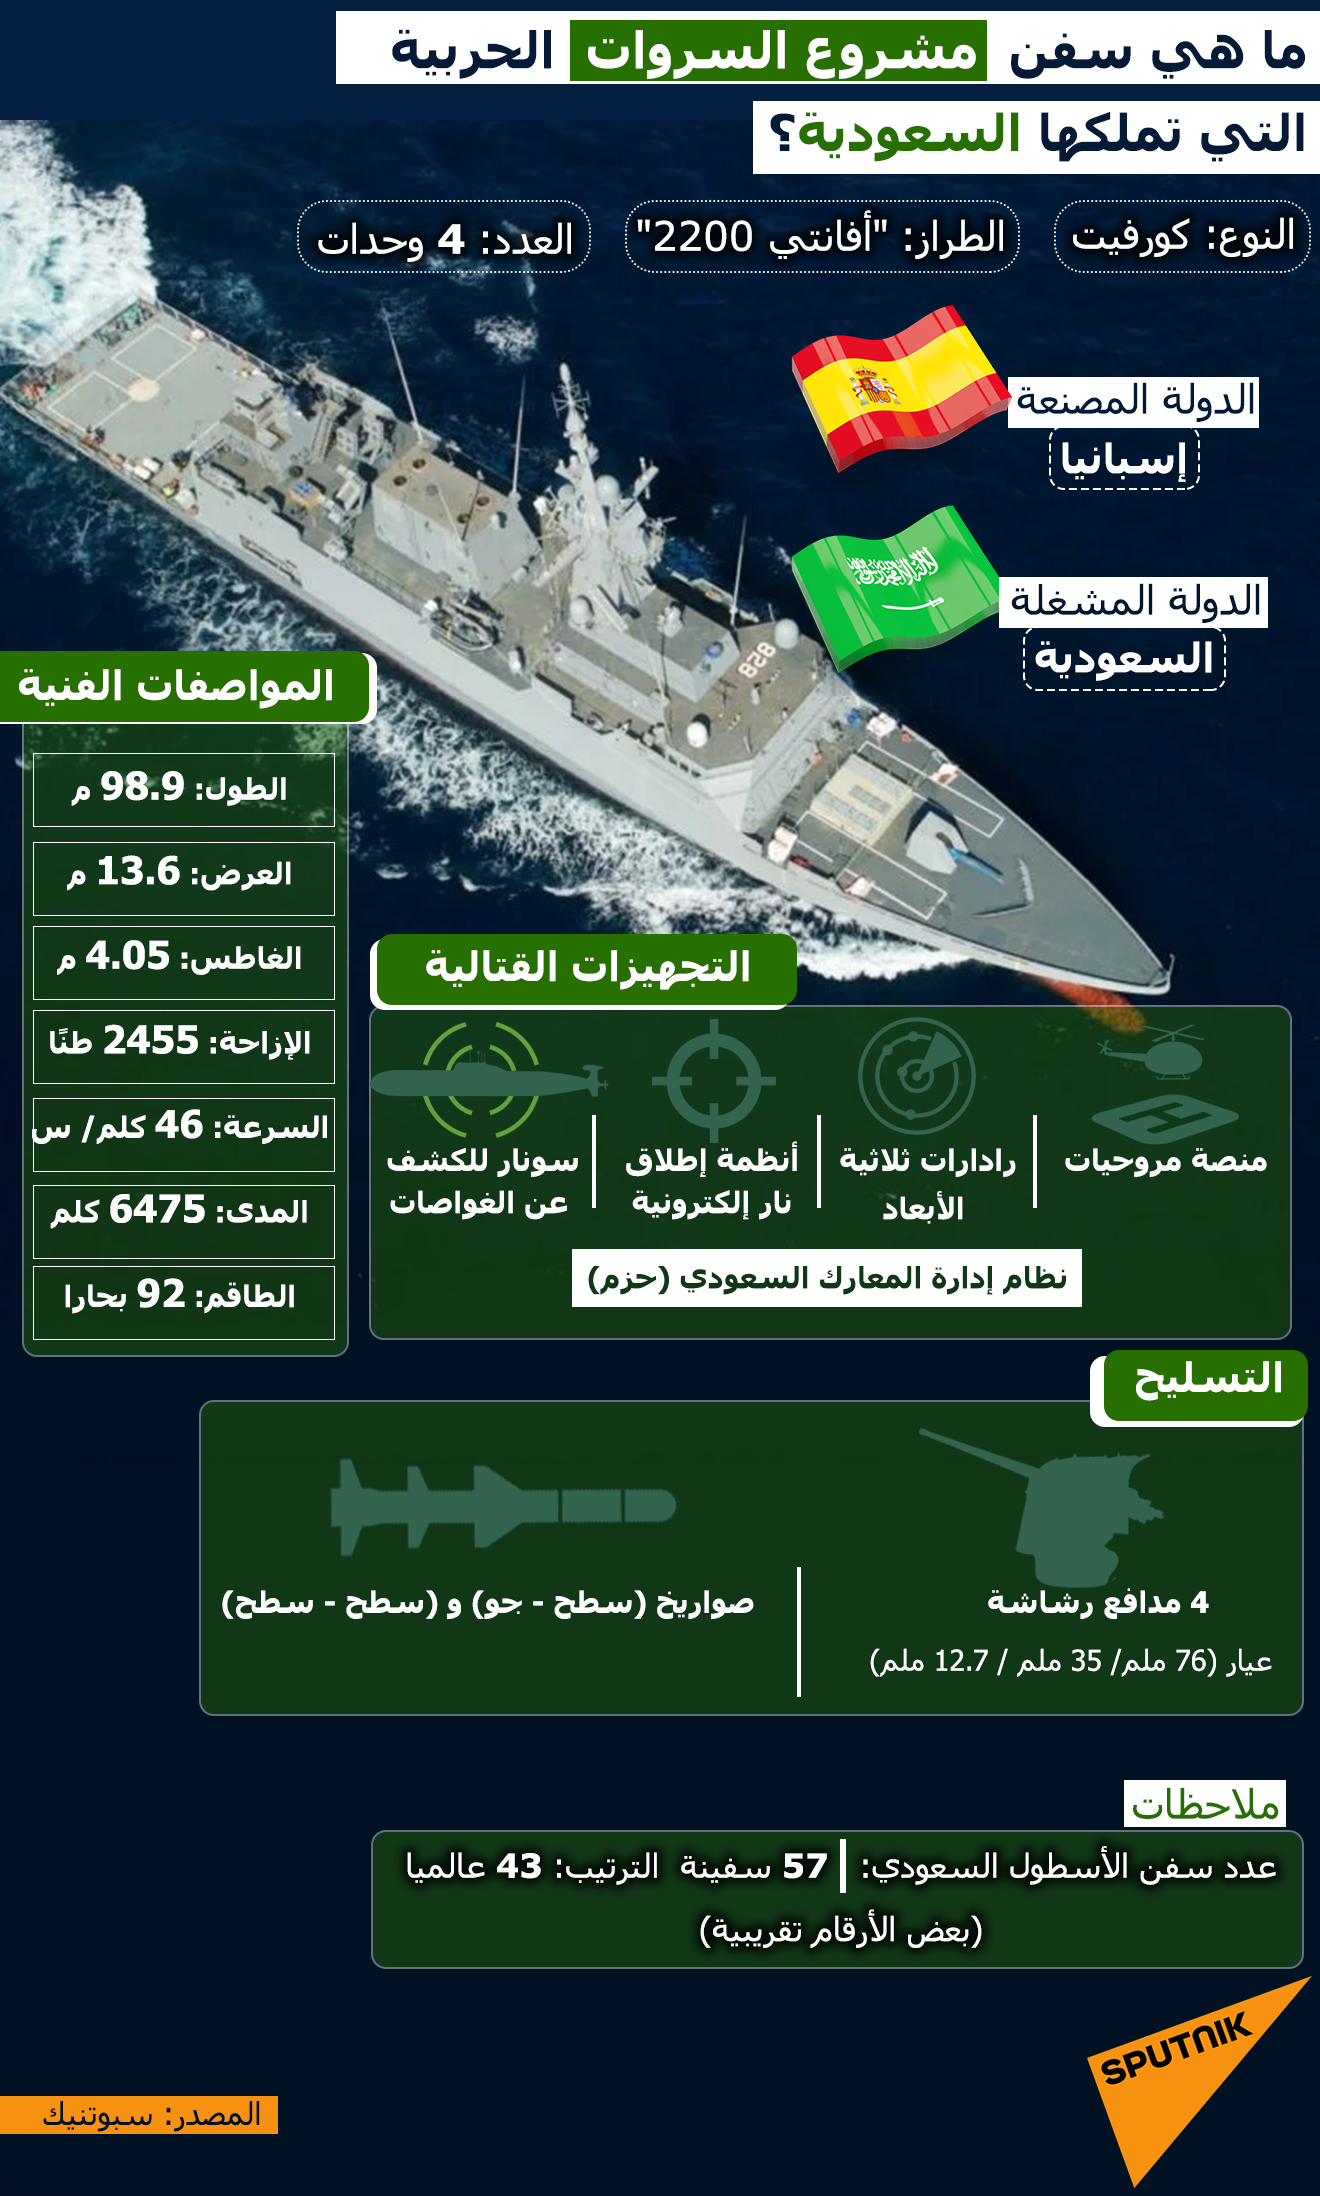 ما هي سفن مشروع السروات الحربية التي تملكها السعودية - سبوتنيك عربي